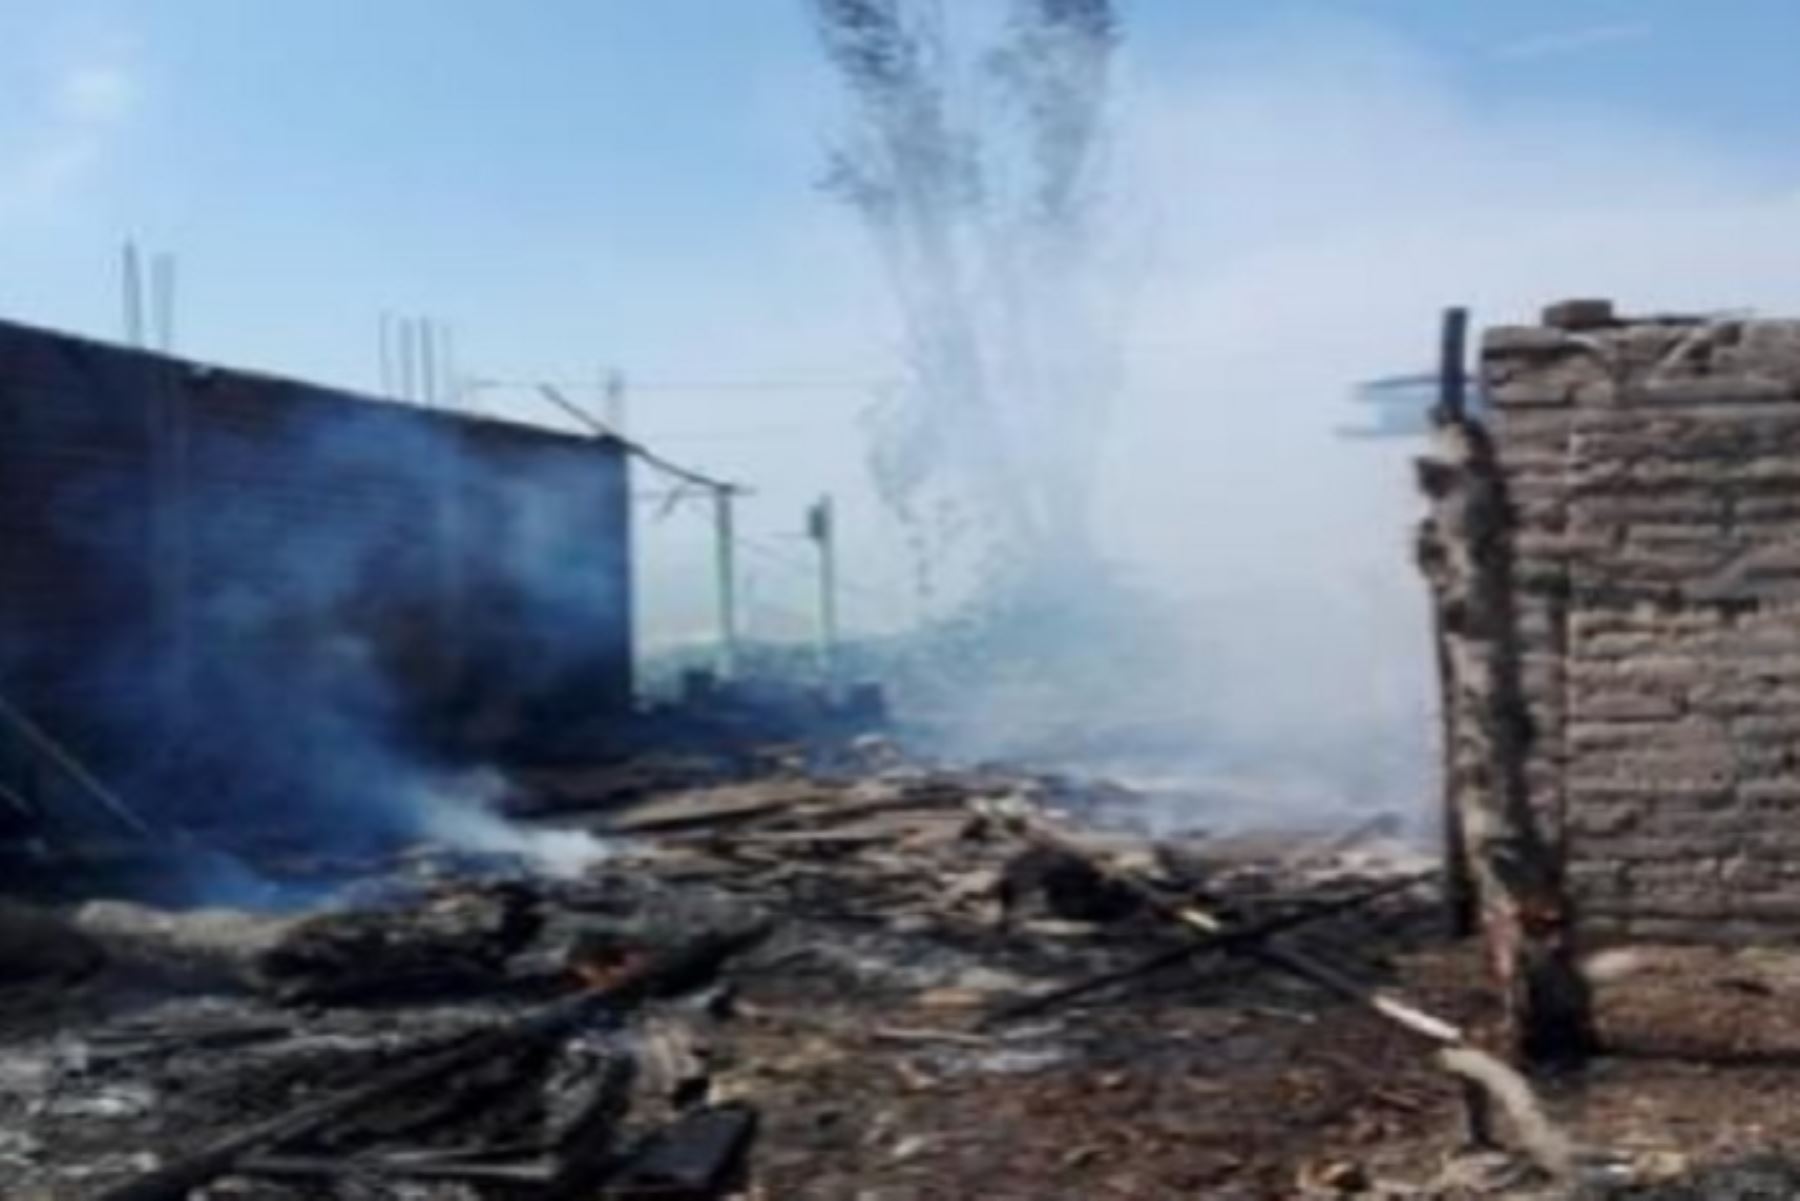 Un incendio urbano destruyó una vivienda en el sector de San Luis Alto, distrito de Aucallama, provincia de Huaral, en la región Lima, dejando a la intemperie a 4 personas, informó el Instituto Nacional de Defensa Civil (Indeci).